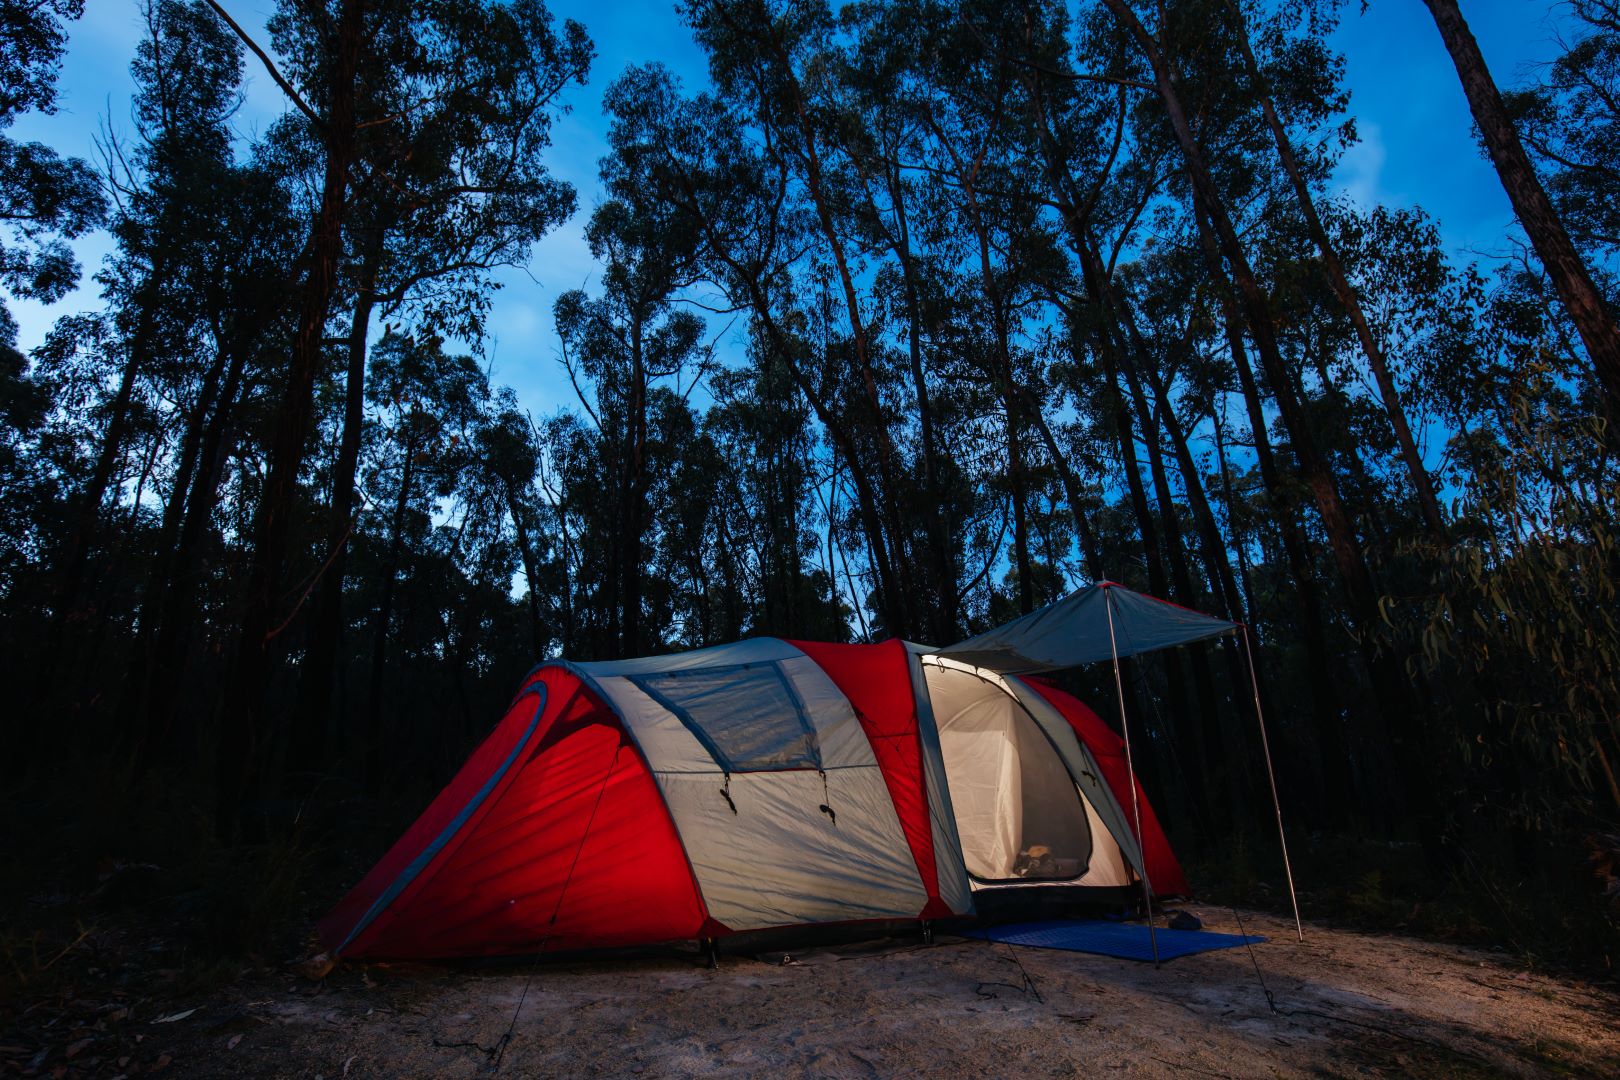 Sardegna in tenda: scopri il camping all'insegna della natura